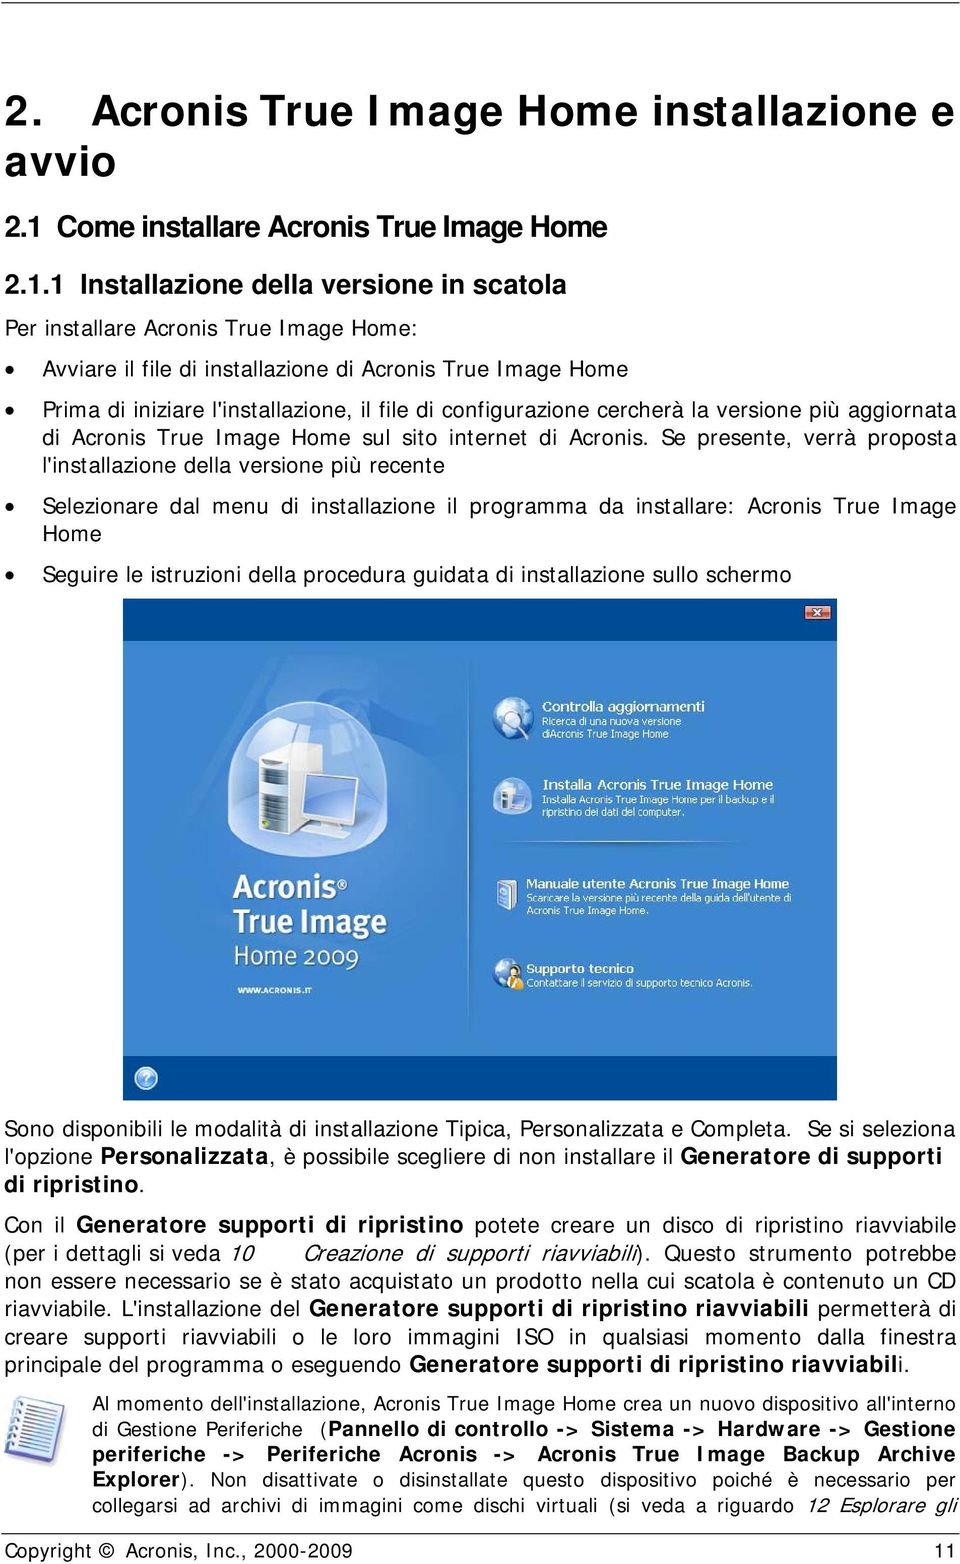 1 Installazione della versione in scatola Per installare Acronis True Image Home: Avviare il file di installazione di Acronis True Image Home Prima di iniziare l'installazione, il file di